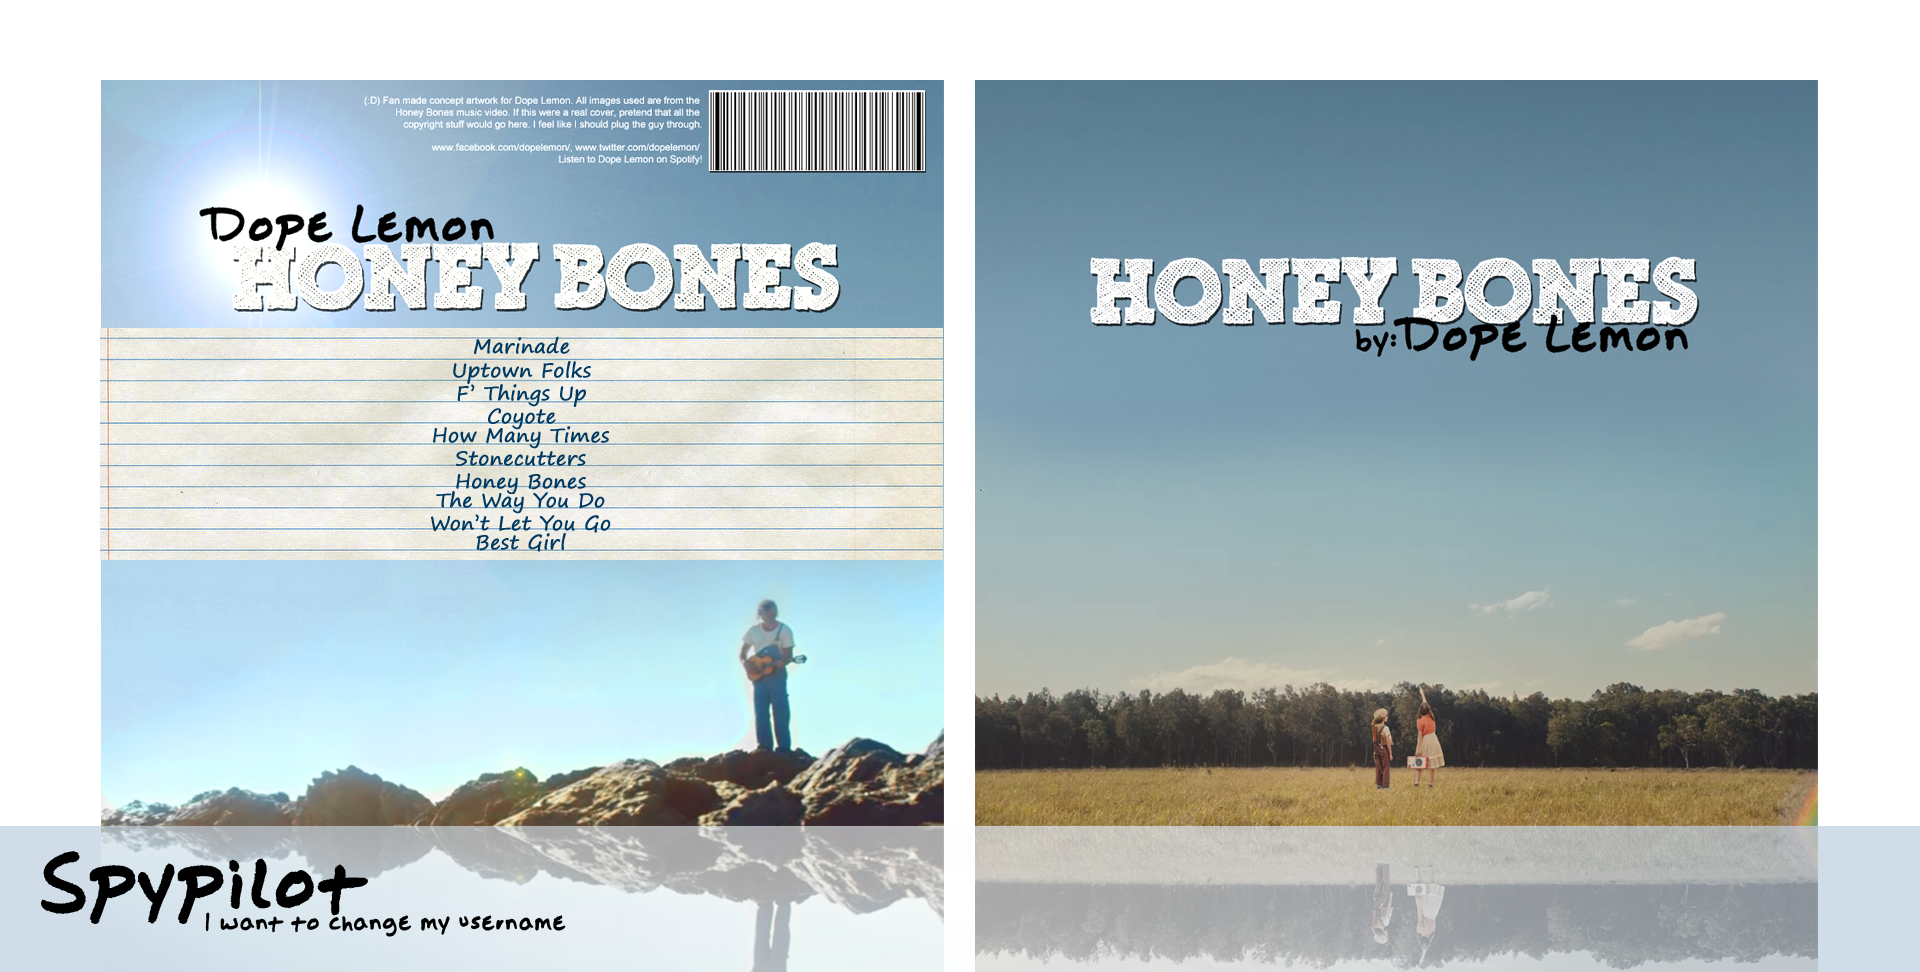 Dope Lemon: Honey Bones box cover